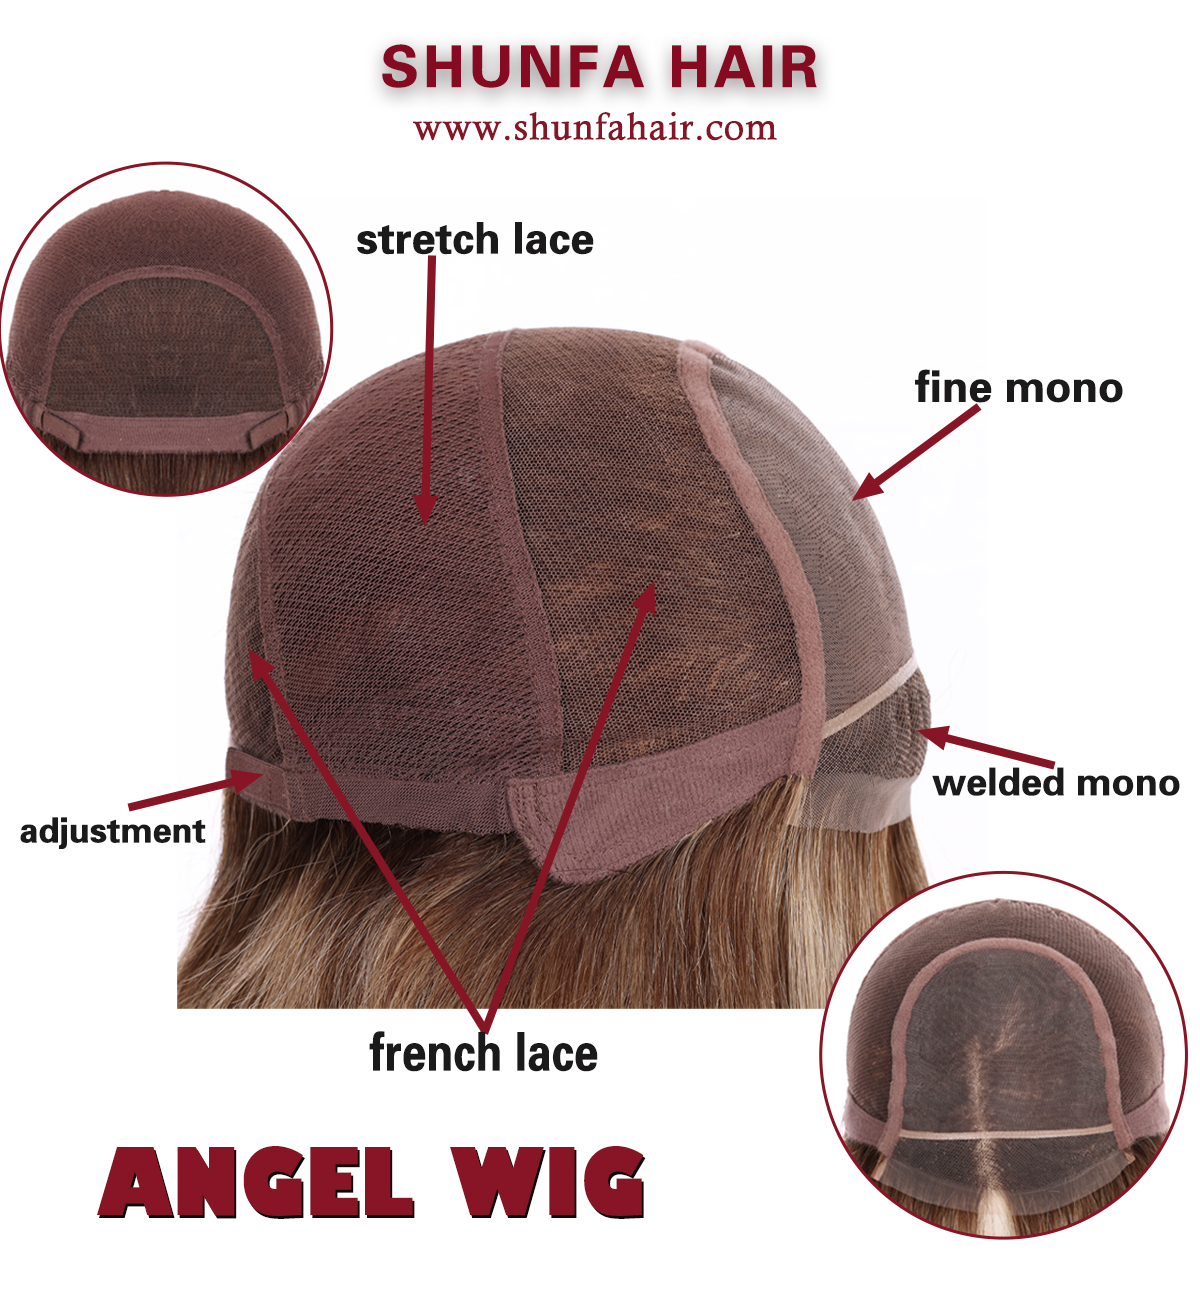 shunfa hair angle wig.png